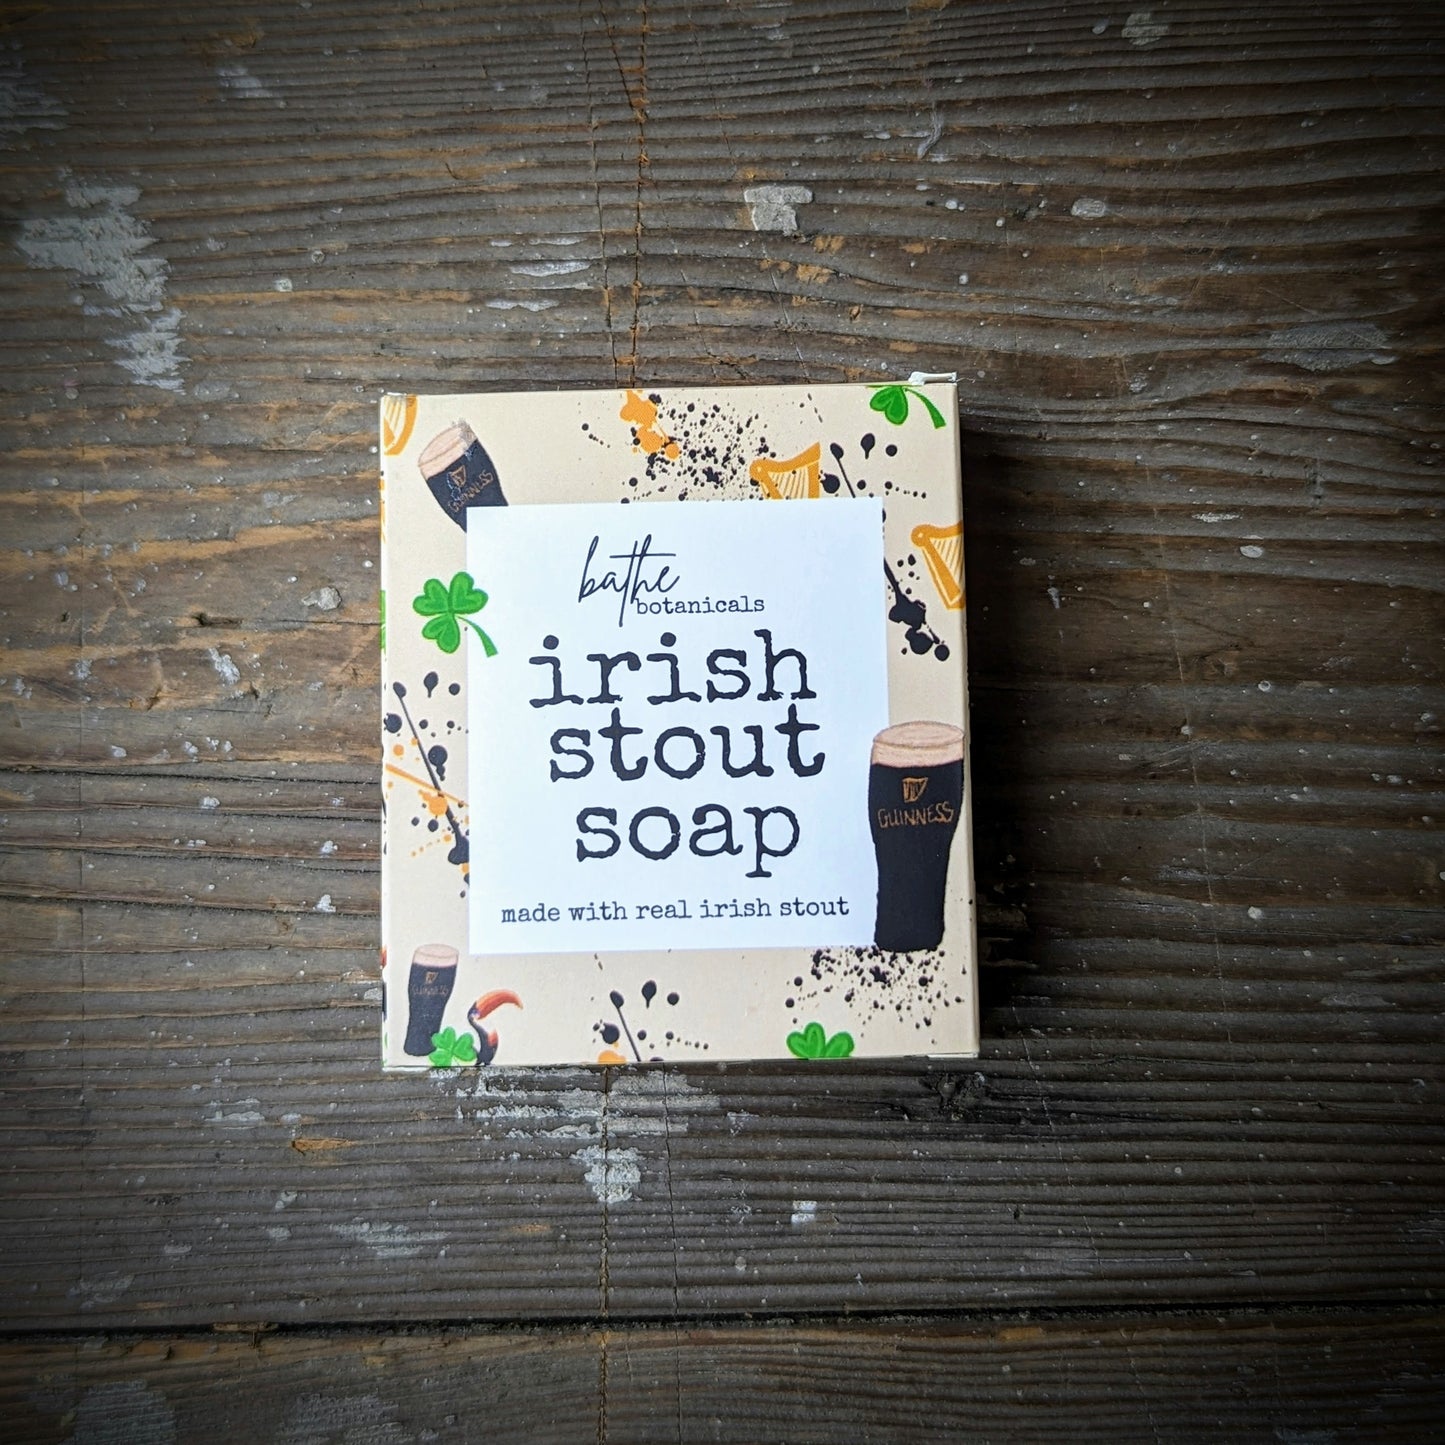 Irish Stout Soap by Bathe Botanicals